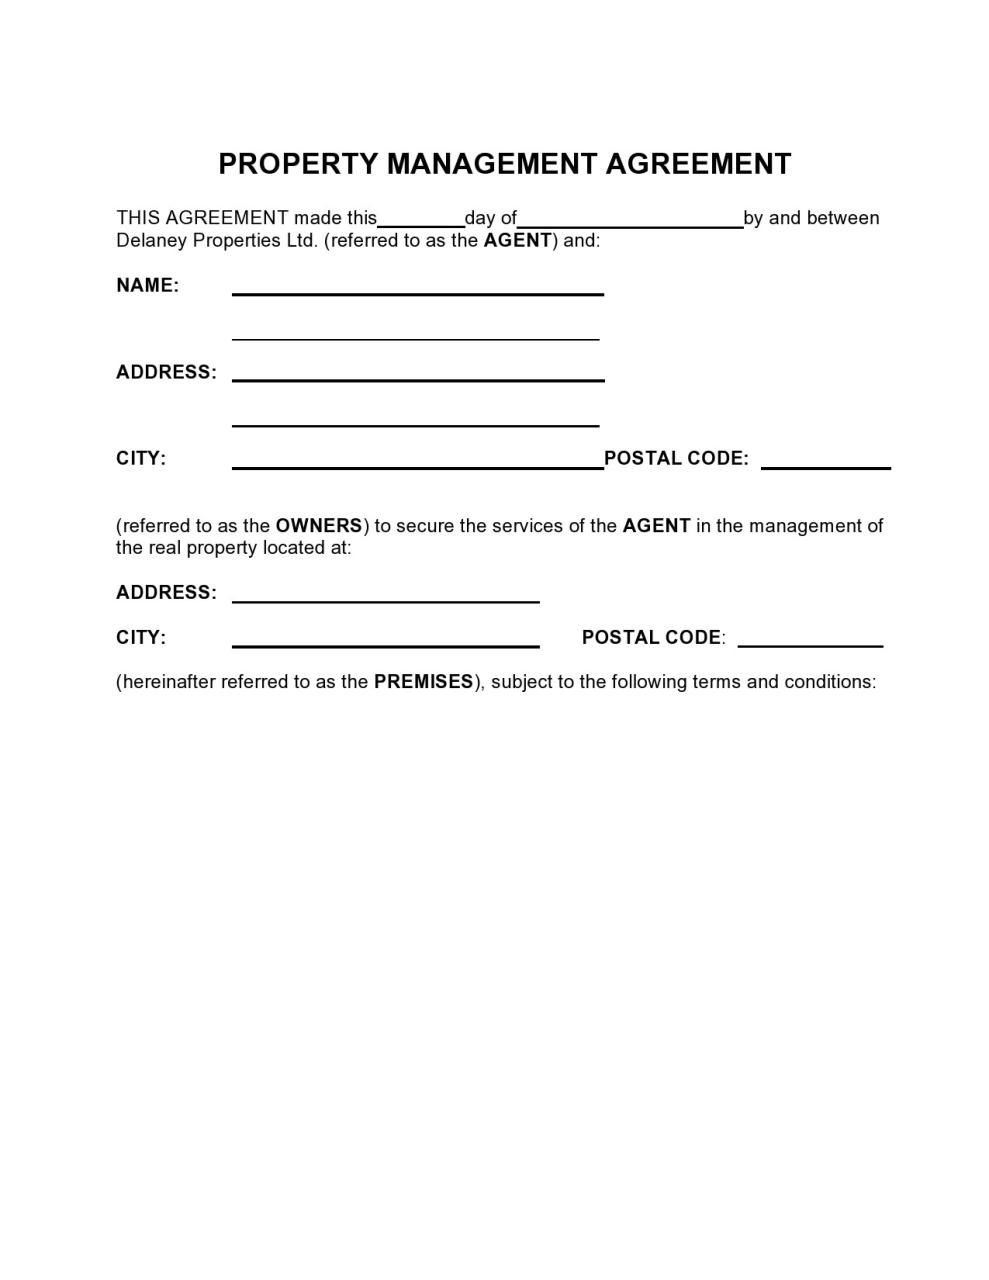 Contrat de gestion immobilière gratuit 07